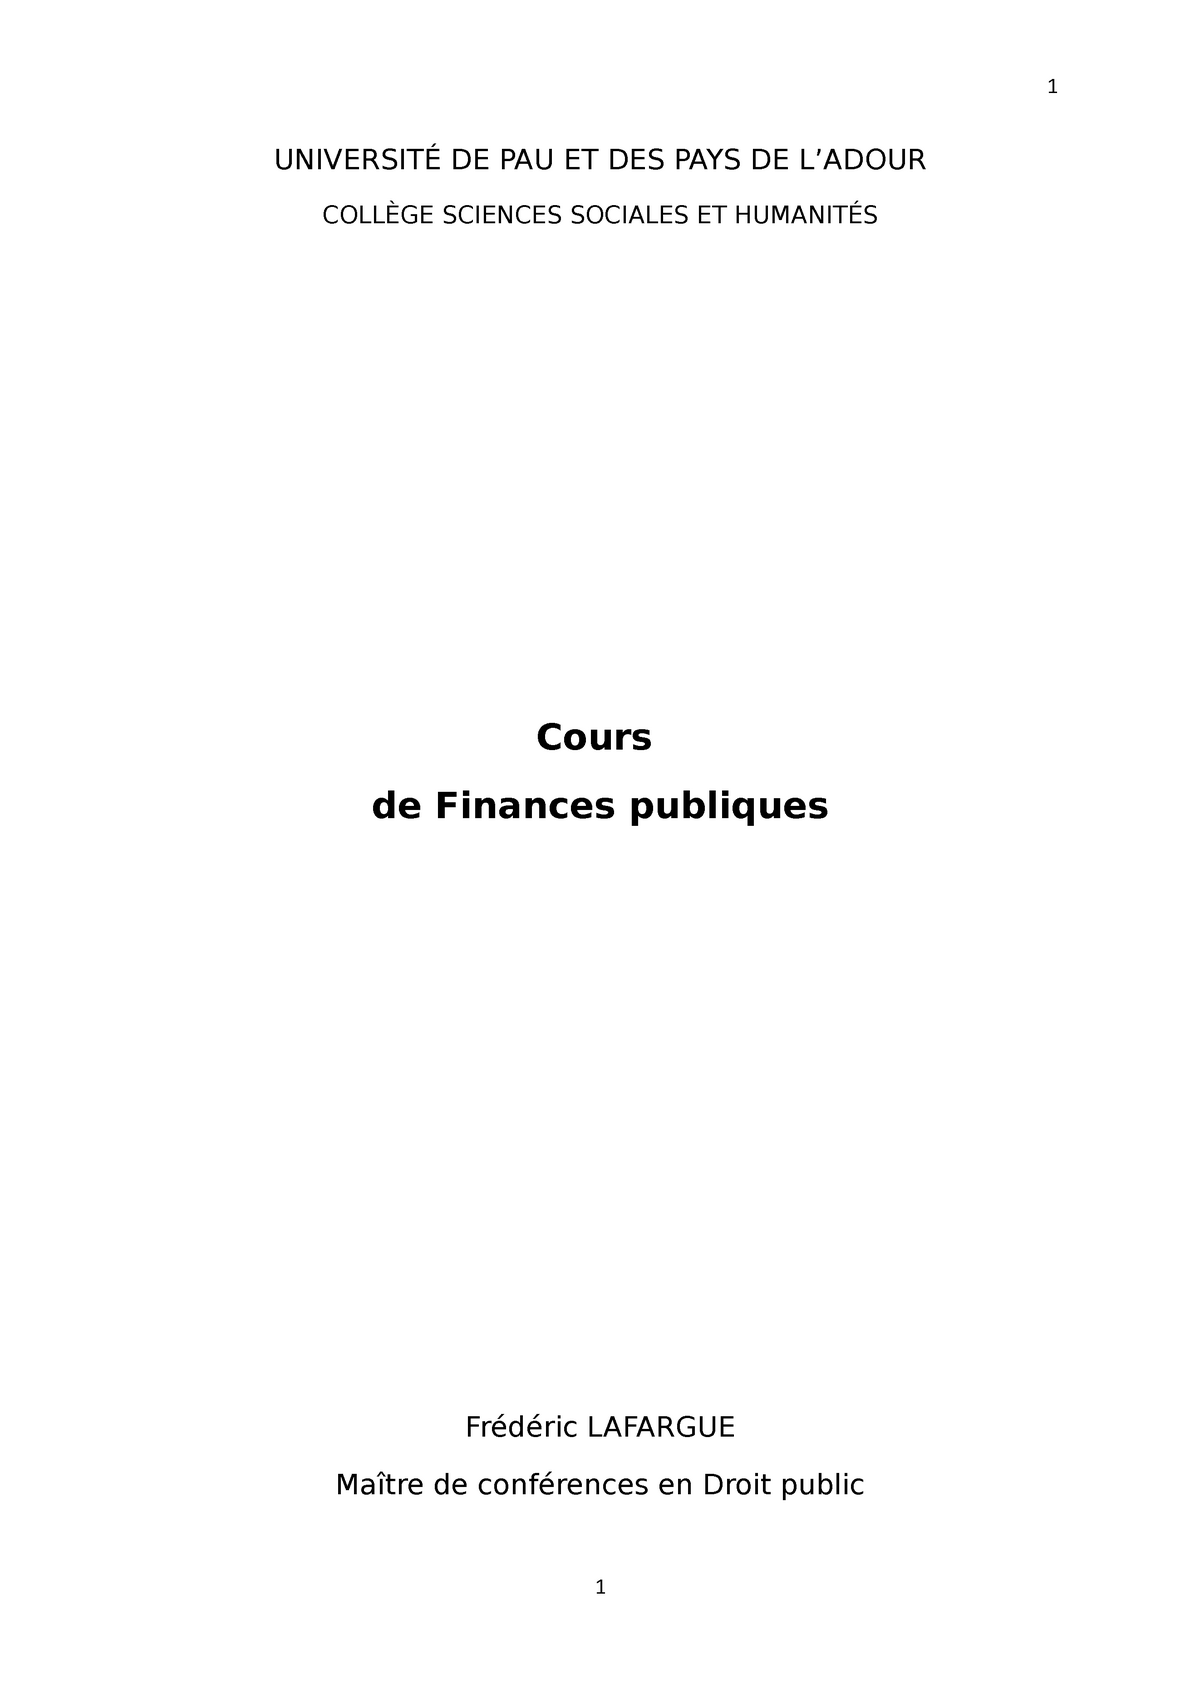 dissertation finance publique